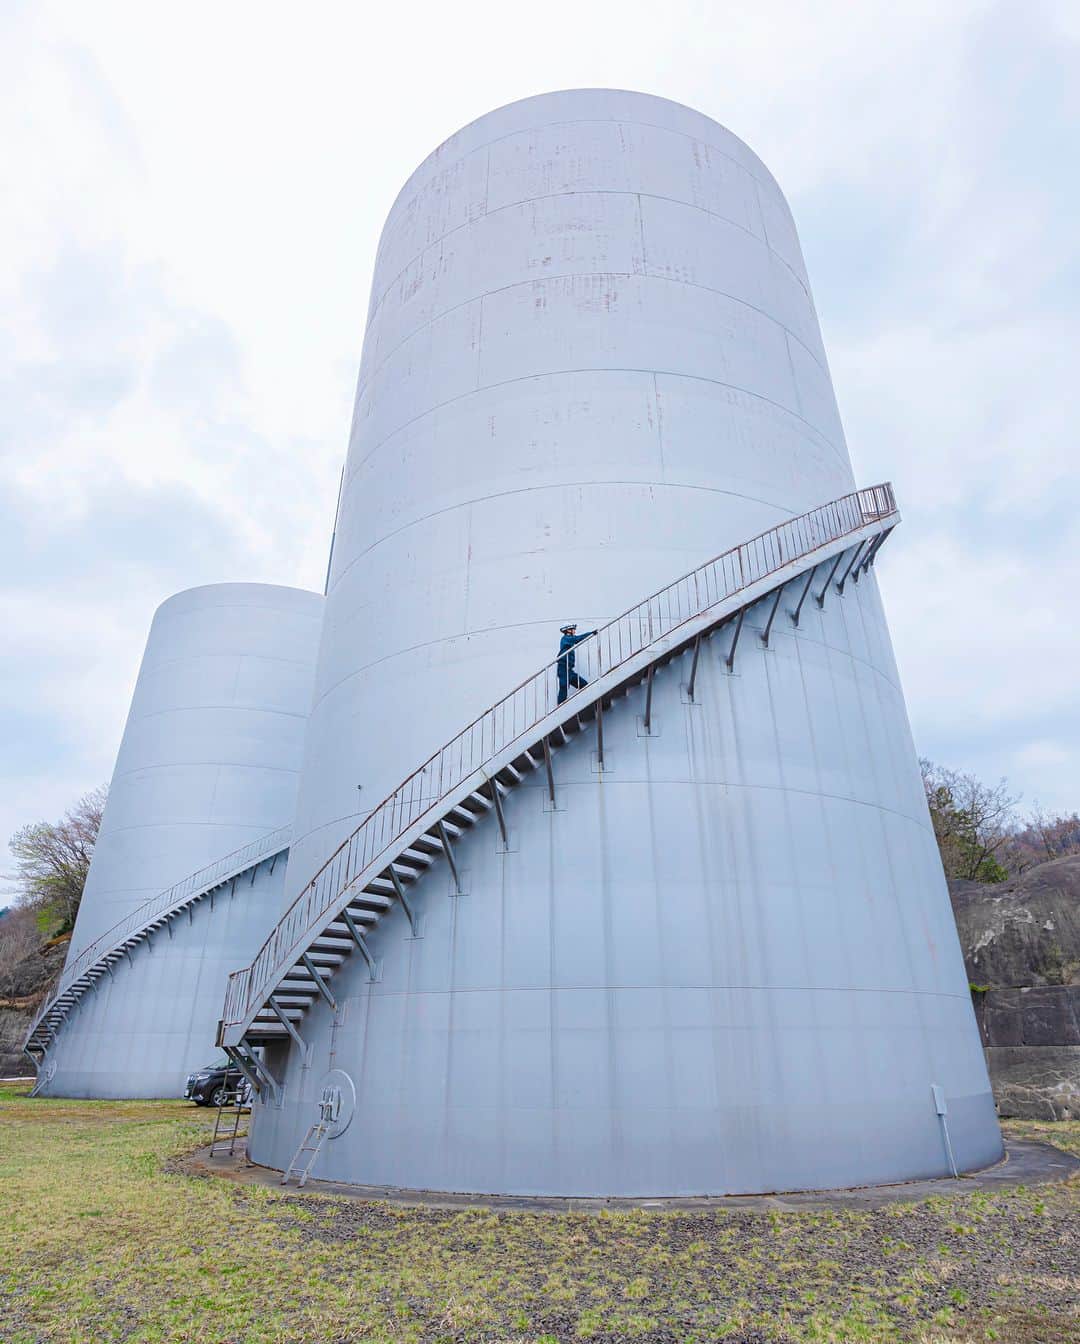 東京電力ホールディングス株式会社のインスタグラム：「玉原発電所　サージタンク Surge Tank at Tambara Hydroelectric Power Station  玉原発電所は、群馬県利根郡みなかみ町にある最大出力120万kWの揚水式水力発電所です。 このサージタンクは、貯水池と発電所の間に設置され、水車の負荷変動やバルブを開閉する時の、水圧の急激な変化を抑える働きがあります。  #東京電力 #tepco #群馬県 #発電所 #水力発電所 #再生可能エネルギー #renewableenergy #renewable #renewablepower #powerstation #powerplant #hydroelectric #hydroelectricpower #曇り空 #くもり #clouds_of_our_world #cloudscapes #cloudsky」